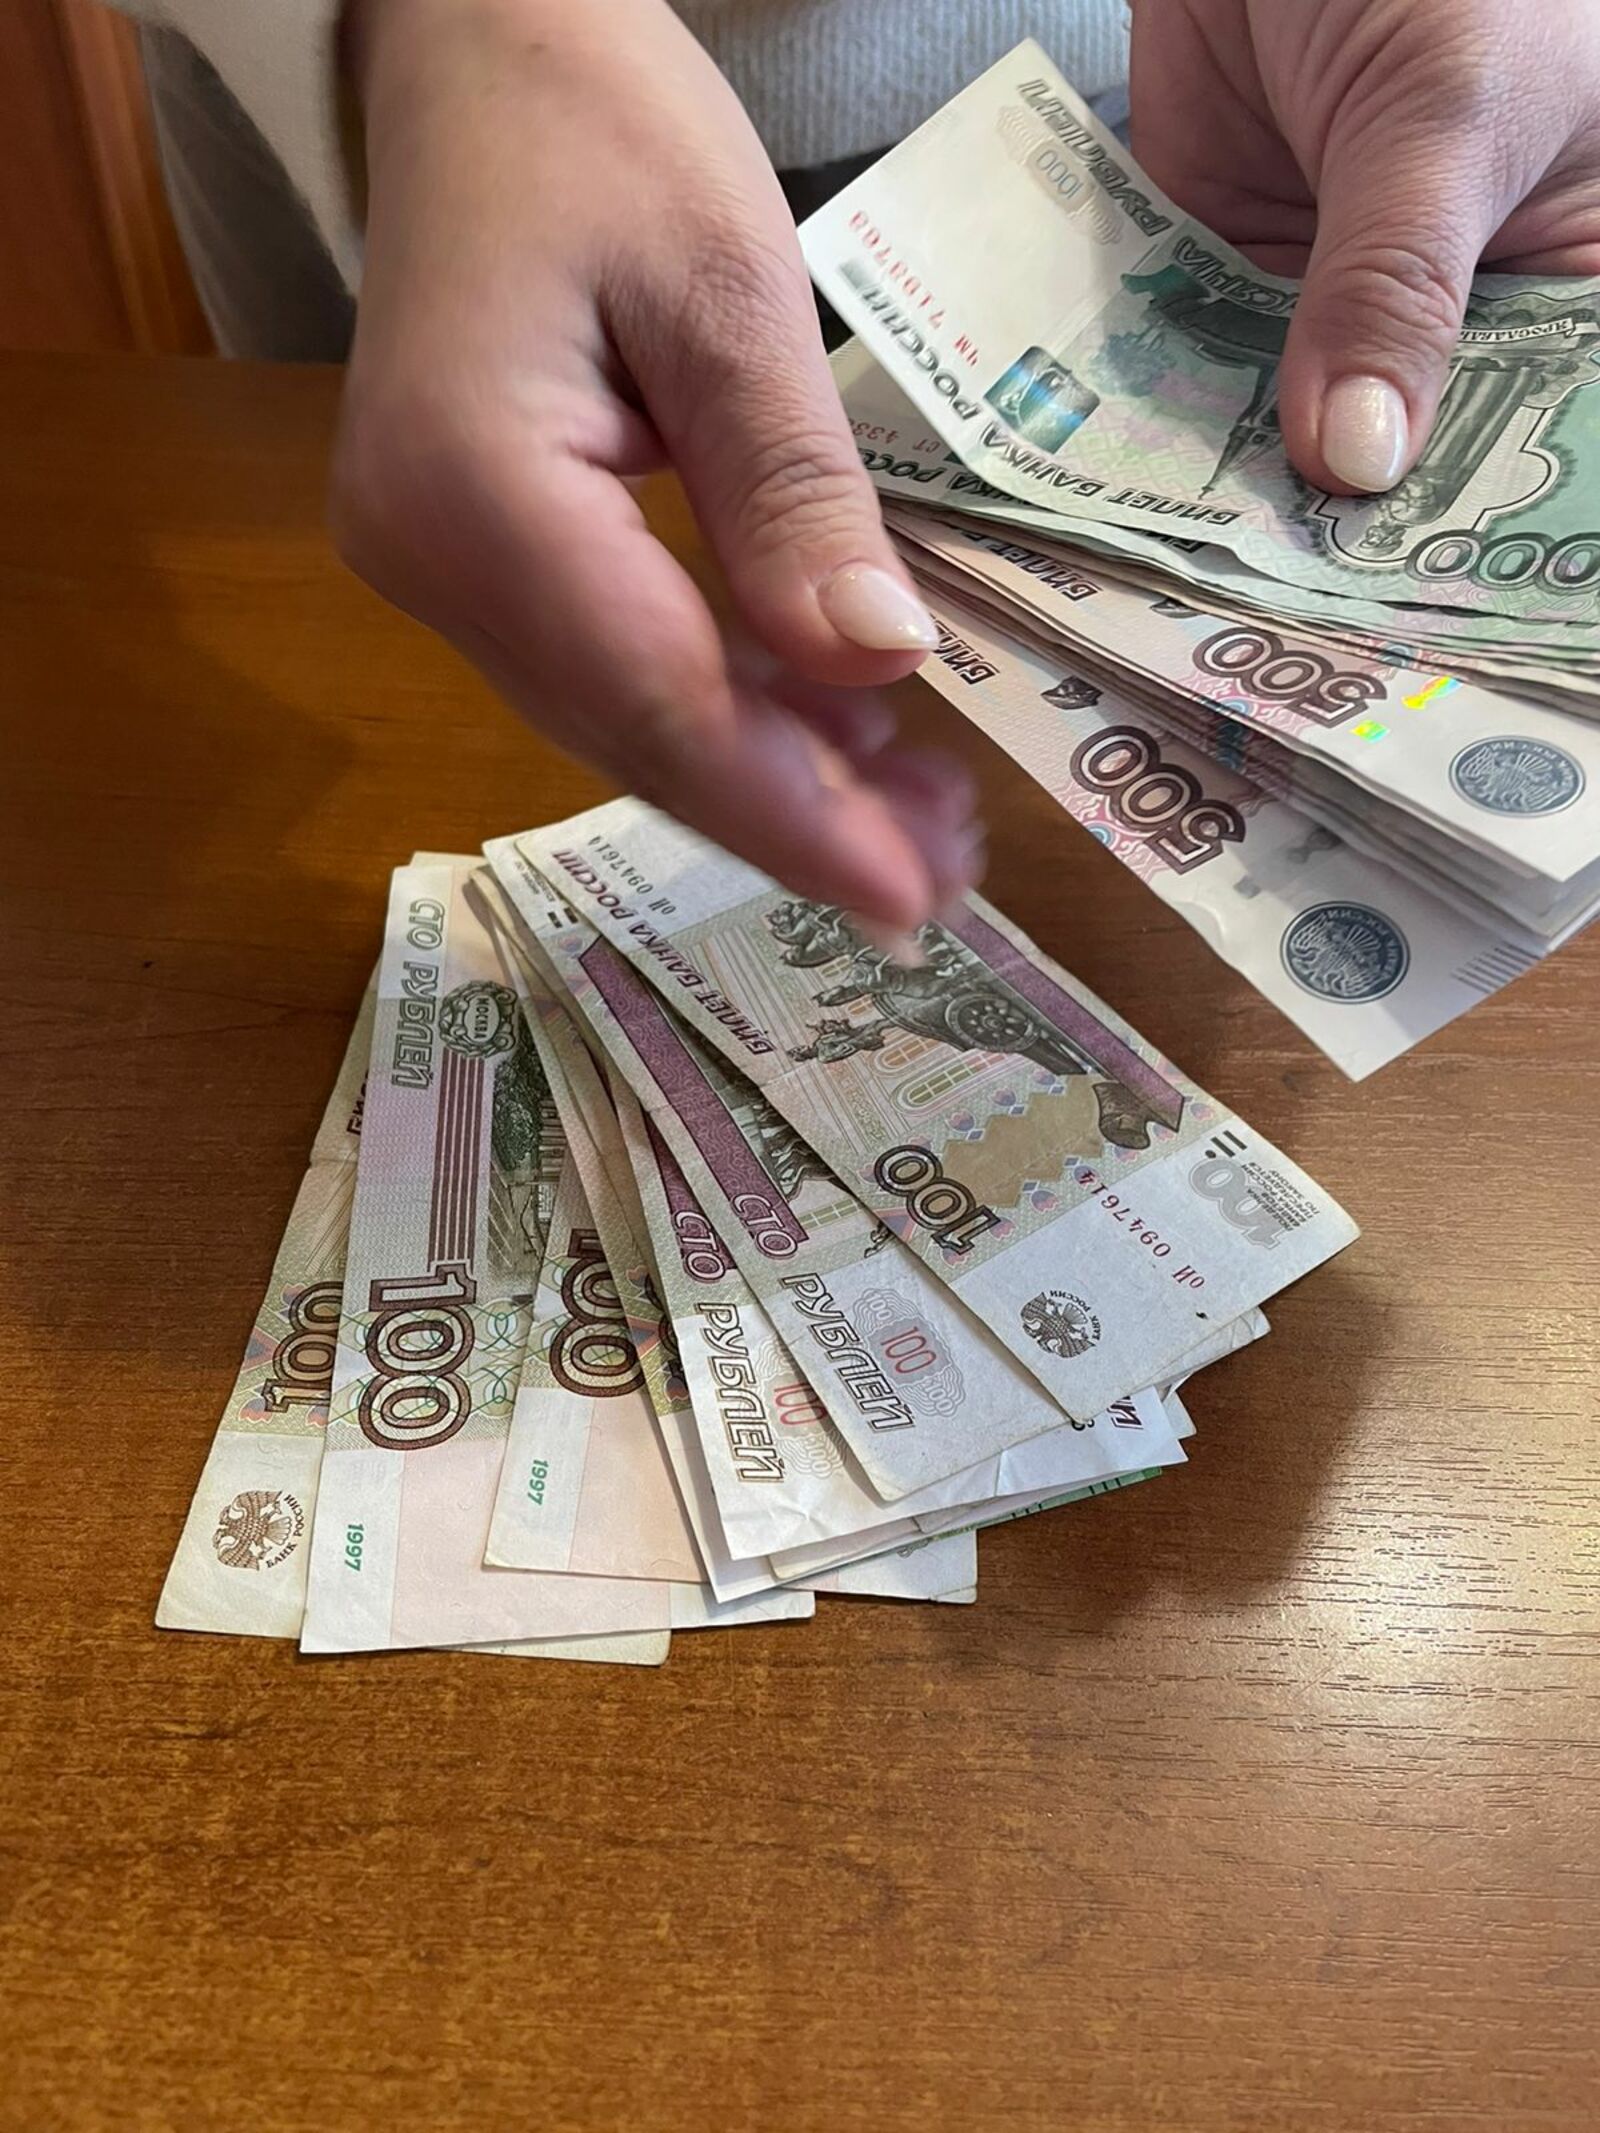 Жителям Башкирии предлагают вакансии с зарплатой до 180 тысяч рублей